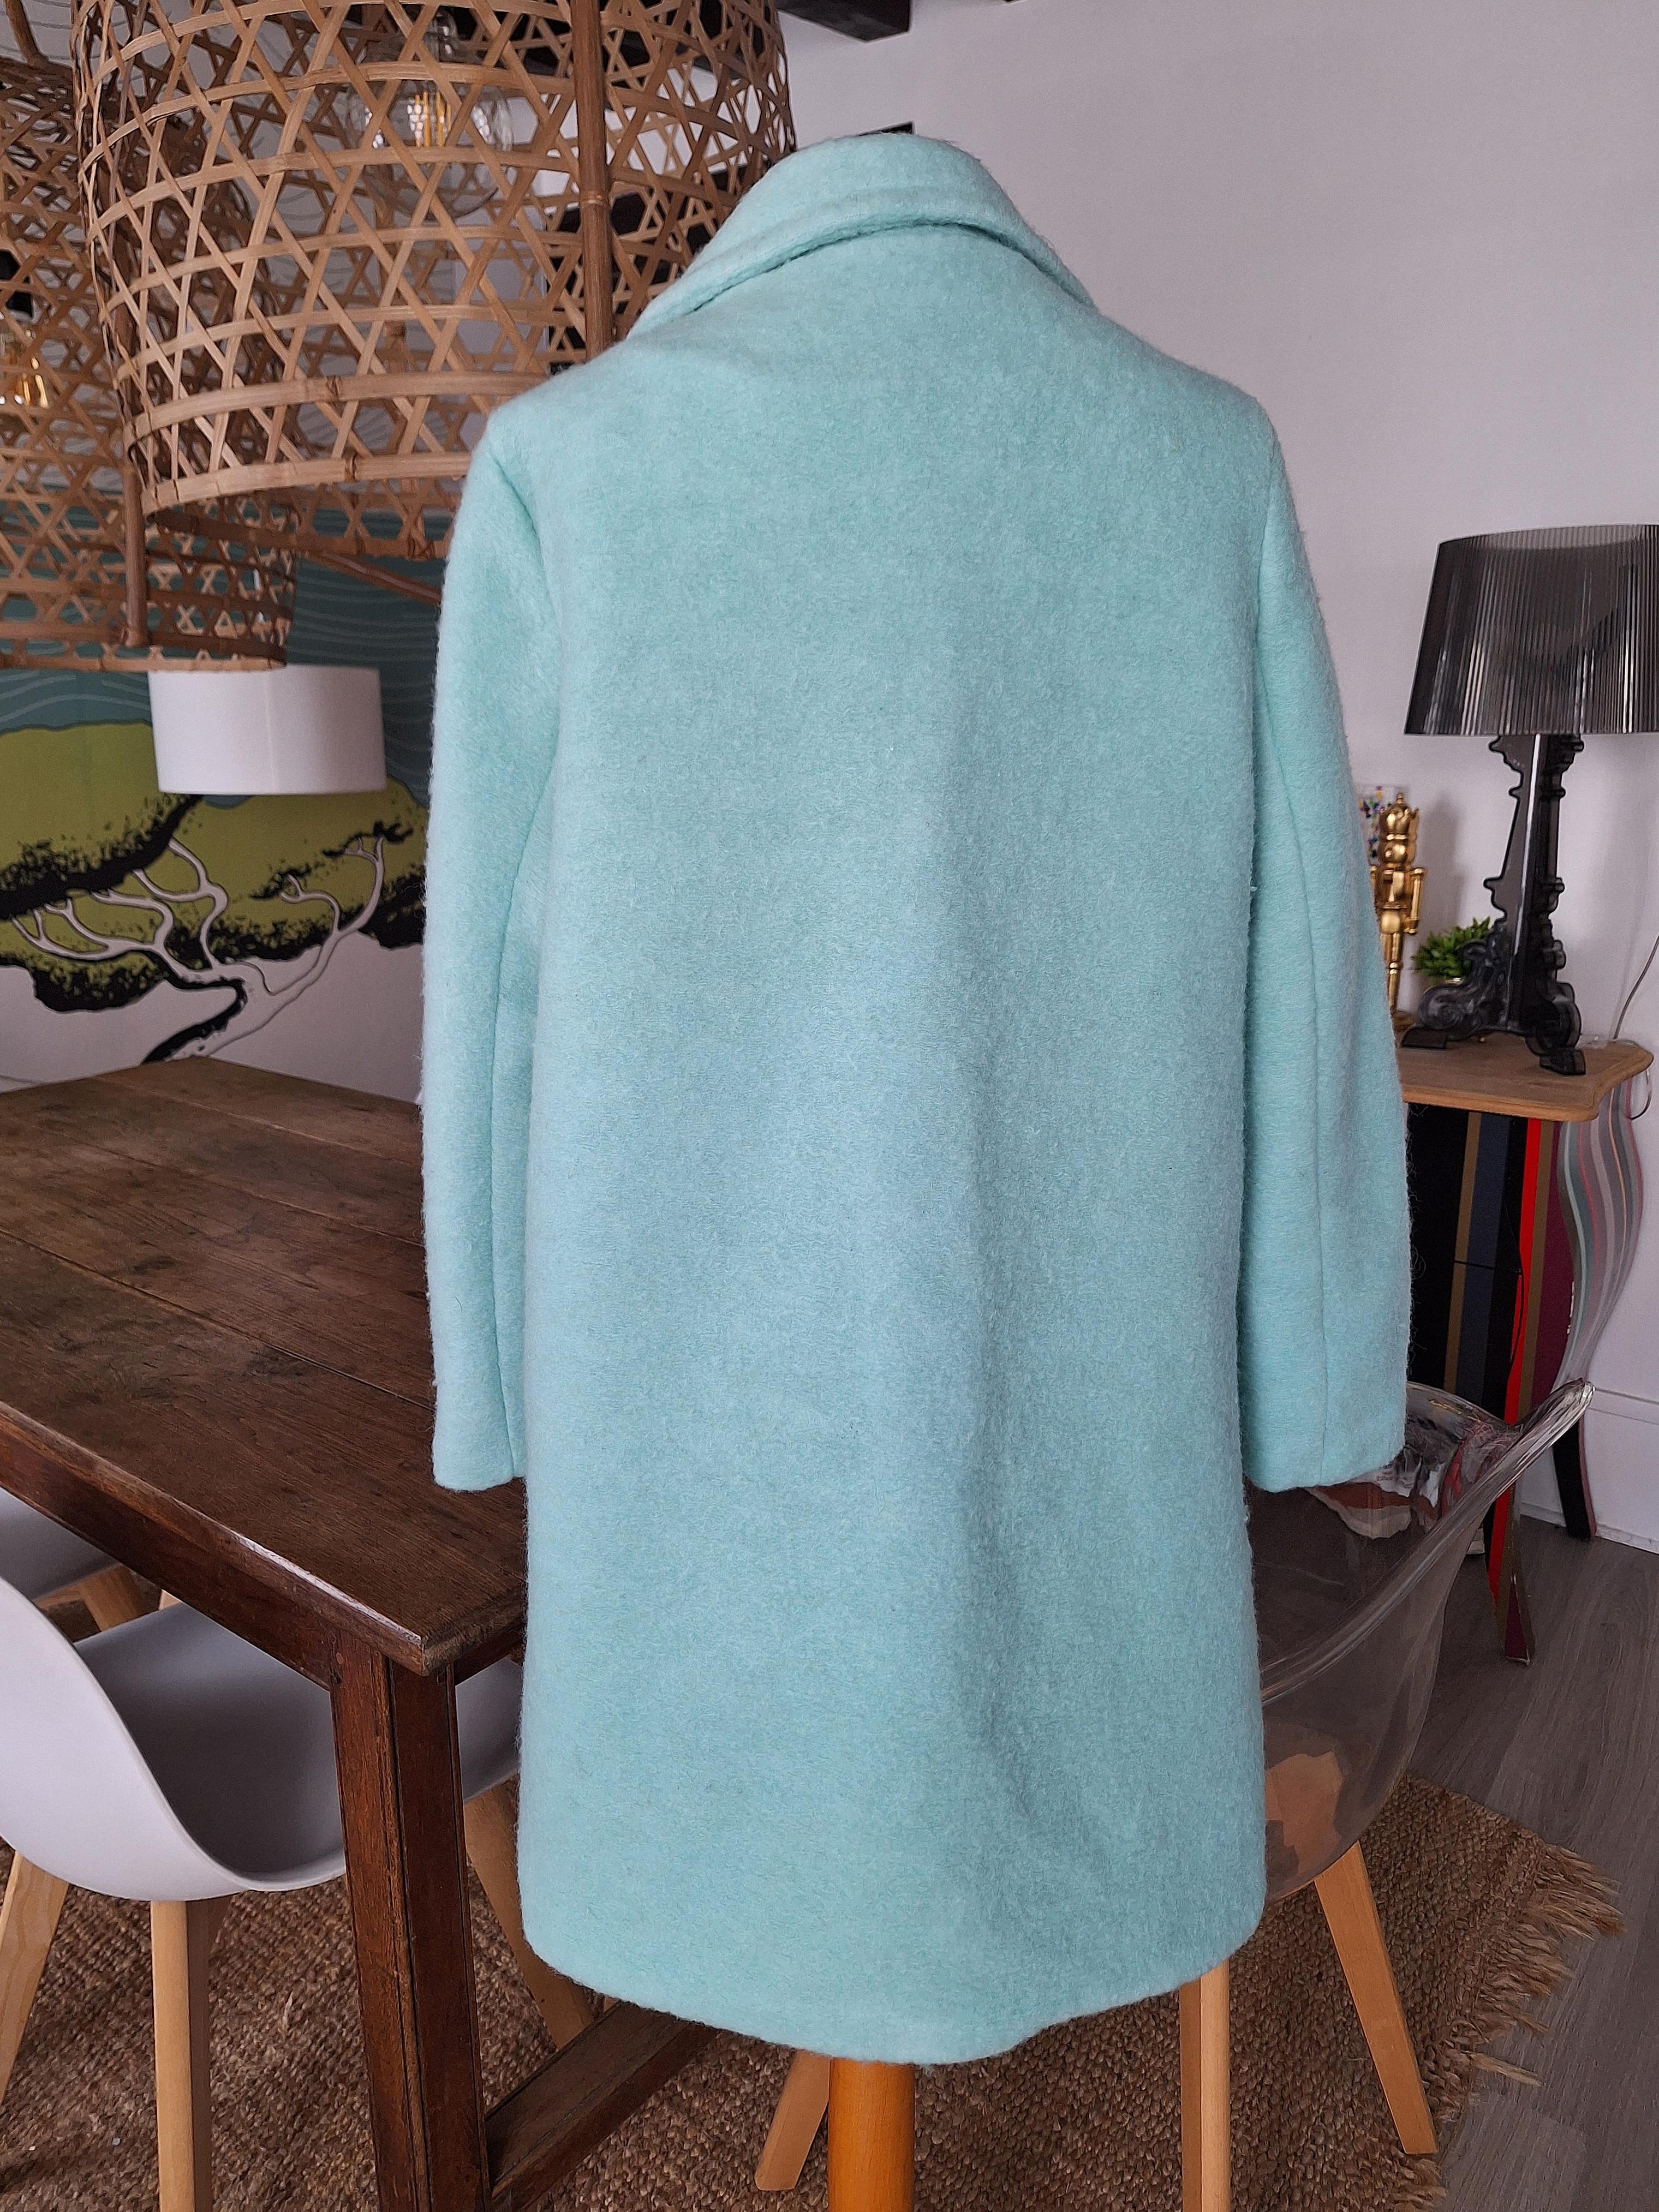 troc de troc beau manteau 3/4 turquoise 50% laine taille 38 image 1